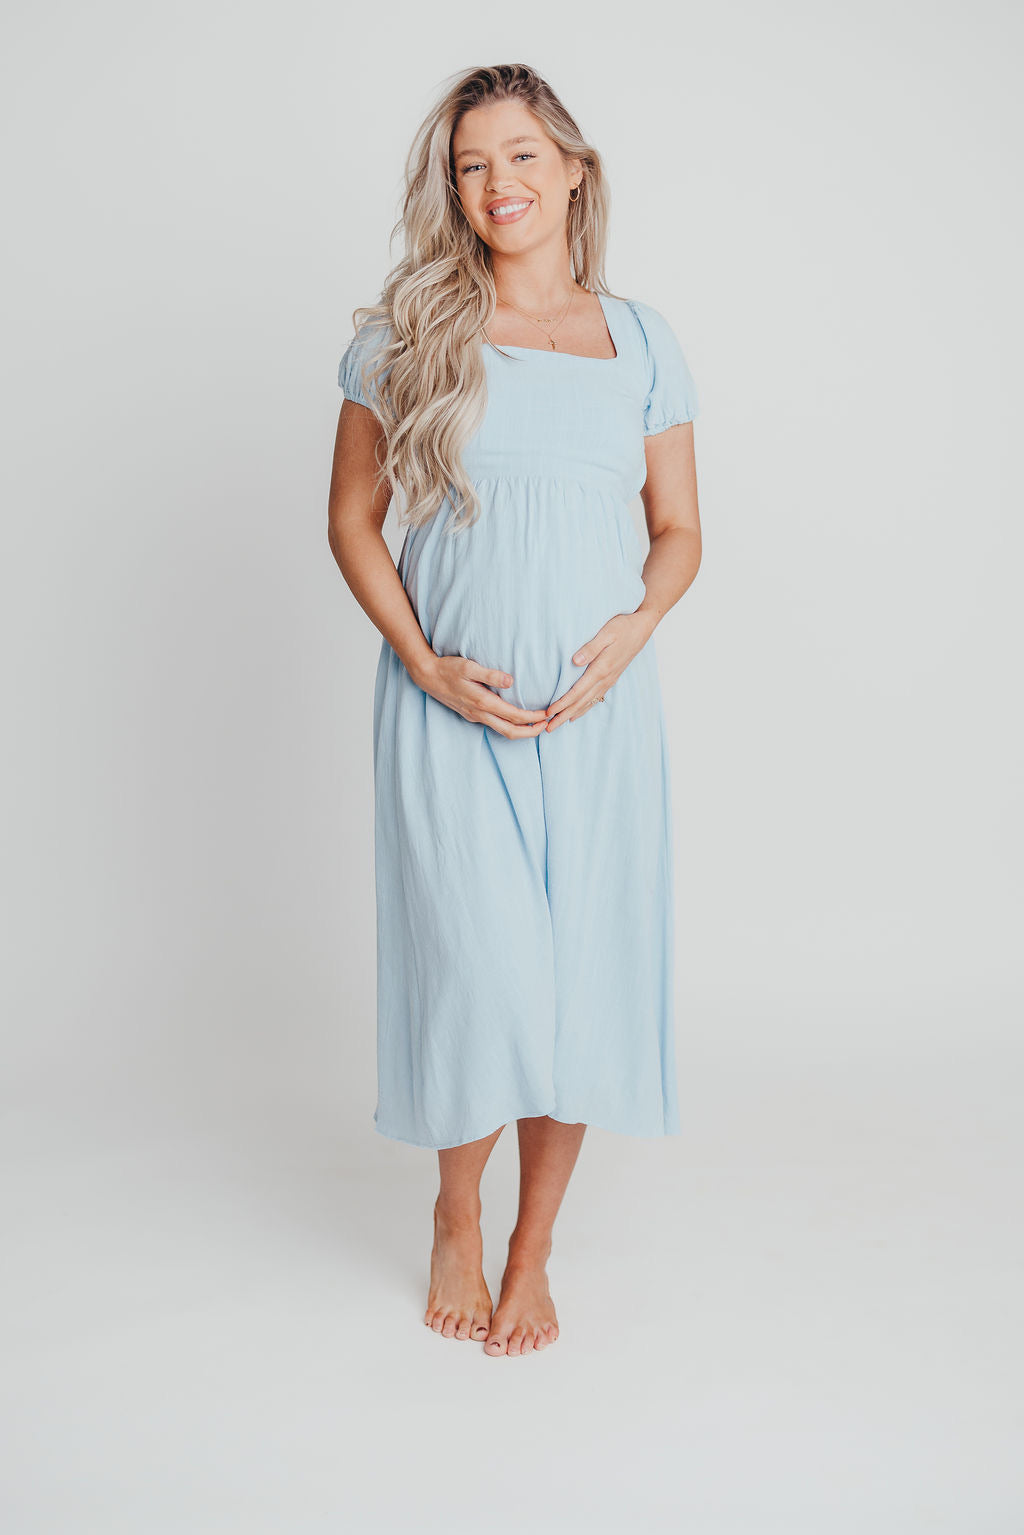 August Open Back Midi Dress in Baby Blue - Bump Friendly